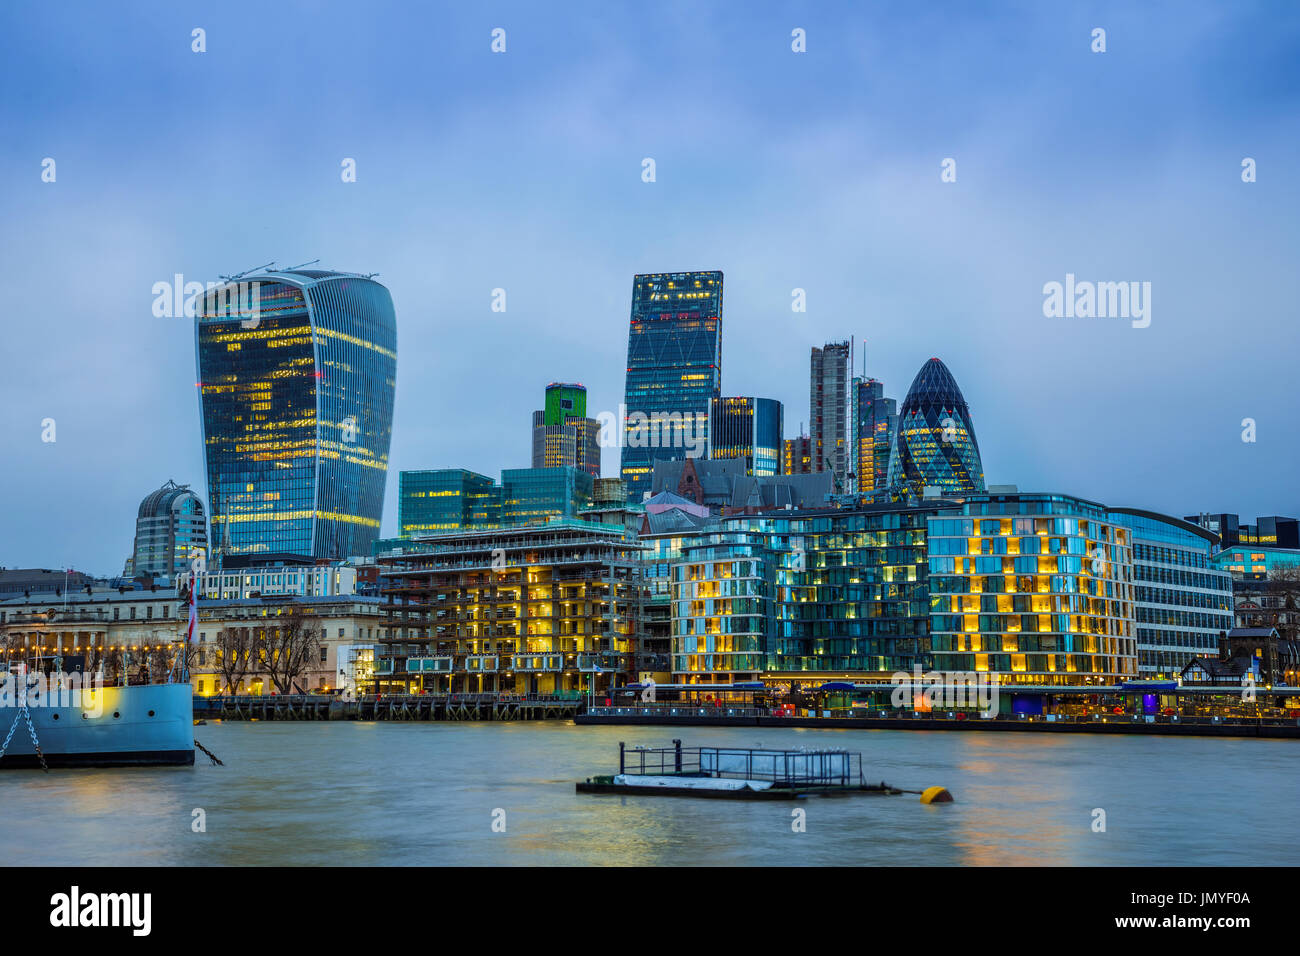 Londra, Inghilterra - Banca, il famoso quartiere degli affari di Londra con grattacieli e cielo blu al tramonto Foto Stock